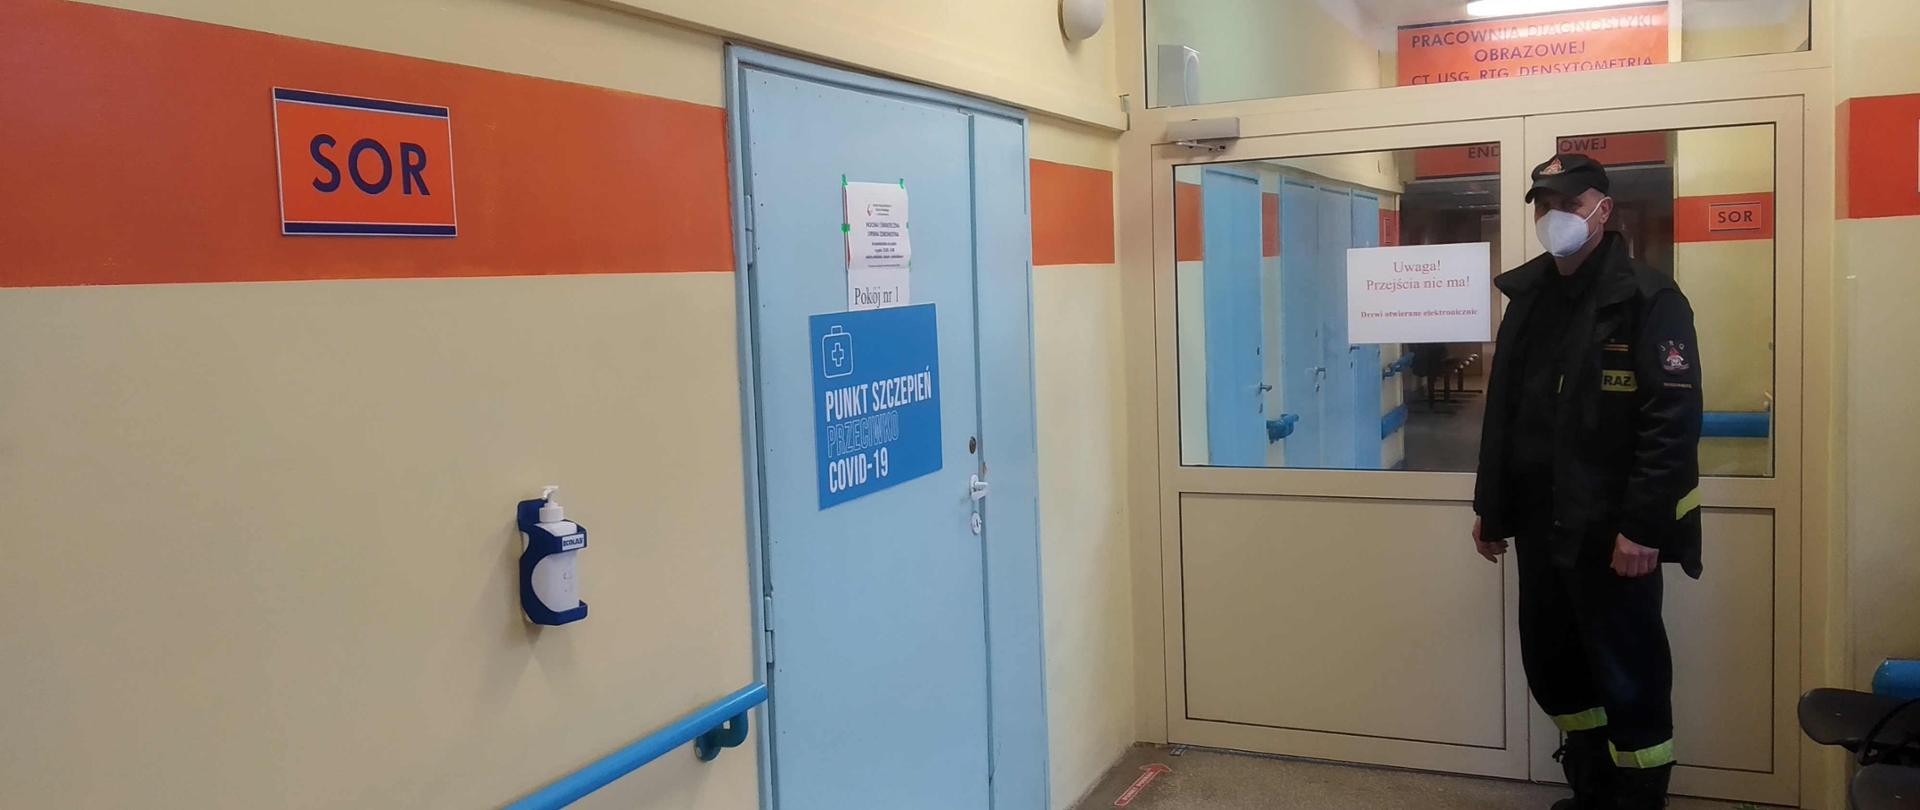 Zdjęcie zrobione na szpitalnym korytarzu. Po lewej stronie znajdują się niebieski drzwi z napisem punkt szczepień przeciwko covid-19. Naprzeciwko drzwi stoi strażak ubrany w ubranie koszarowe, który oczekuje na szczepienie. Twarz ma zasłoniętą maseczką. Za nim znajdują się oszklone drzwi prowadzące do dalszej części szpitala.